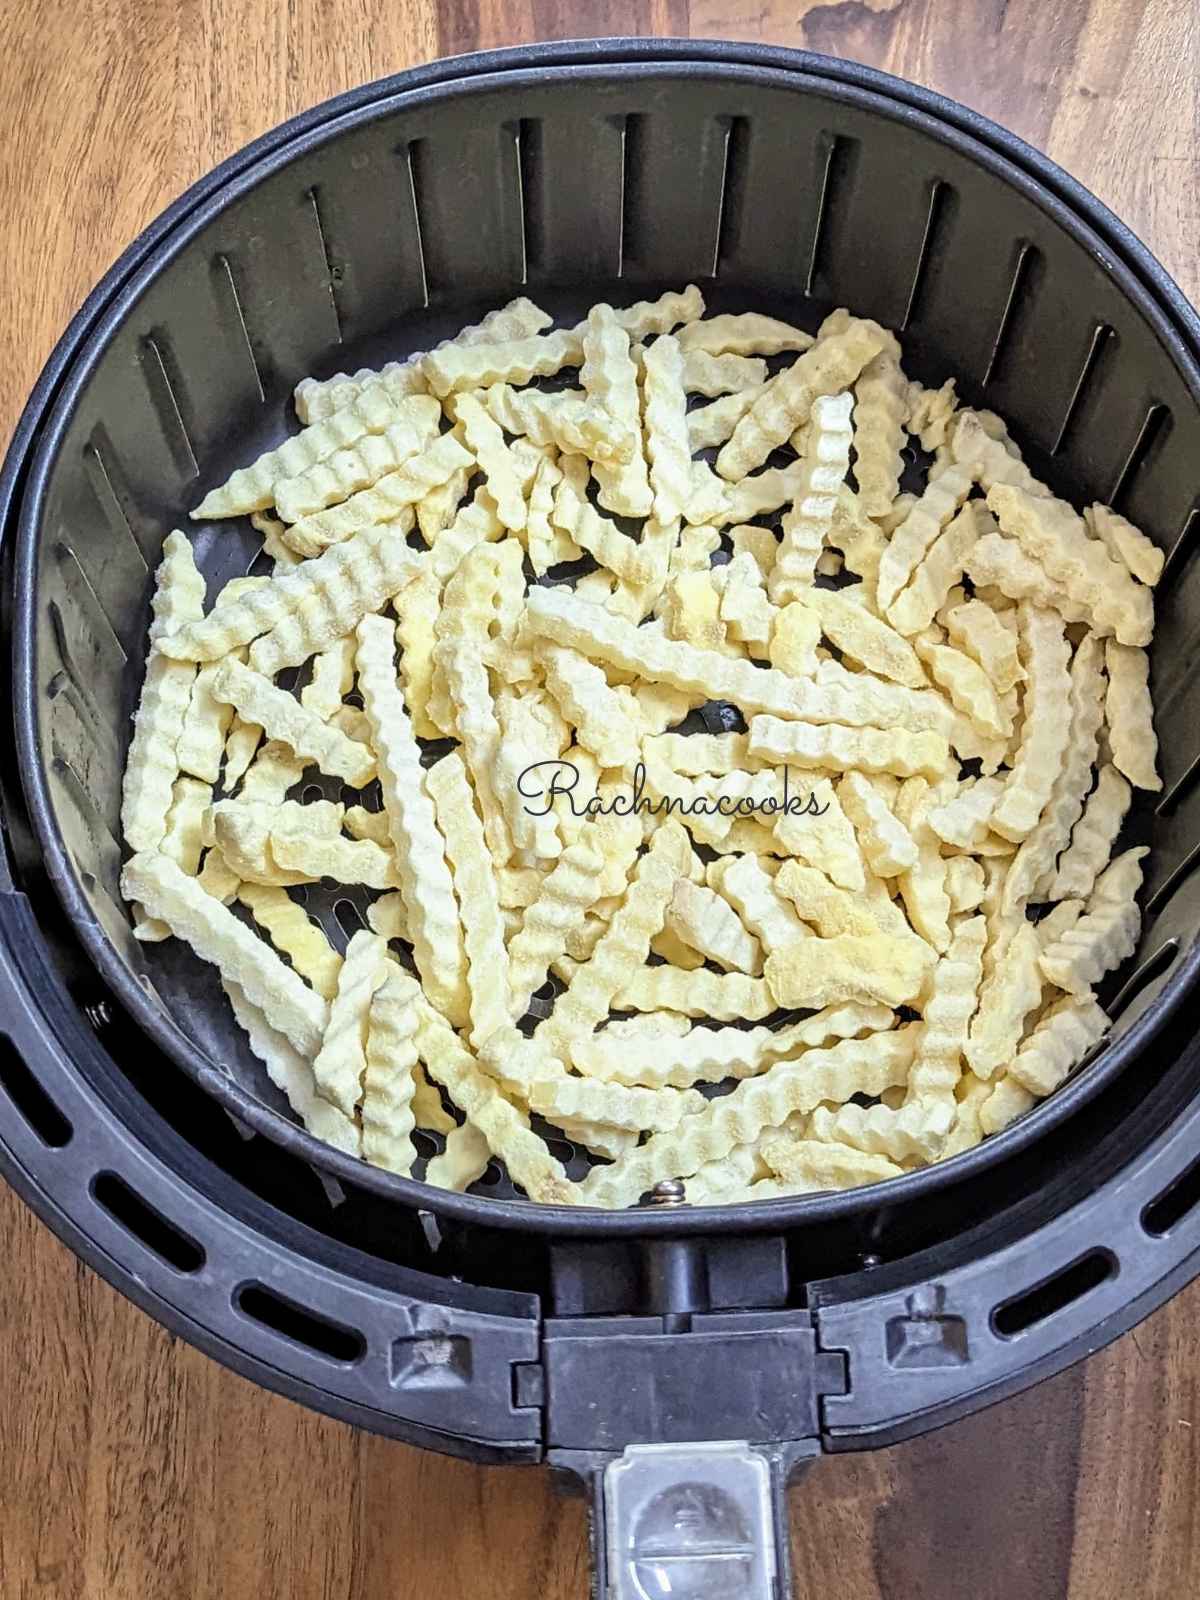 Frozen crinkle cut fries in air fryer basket.